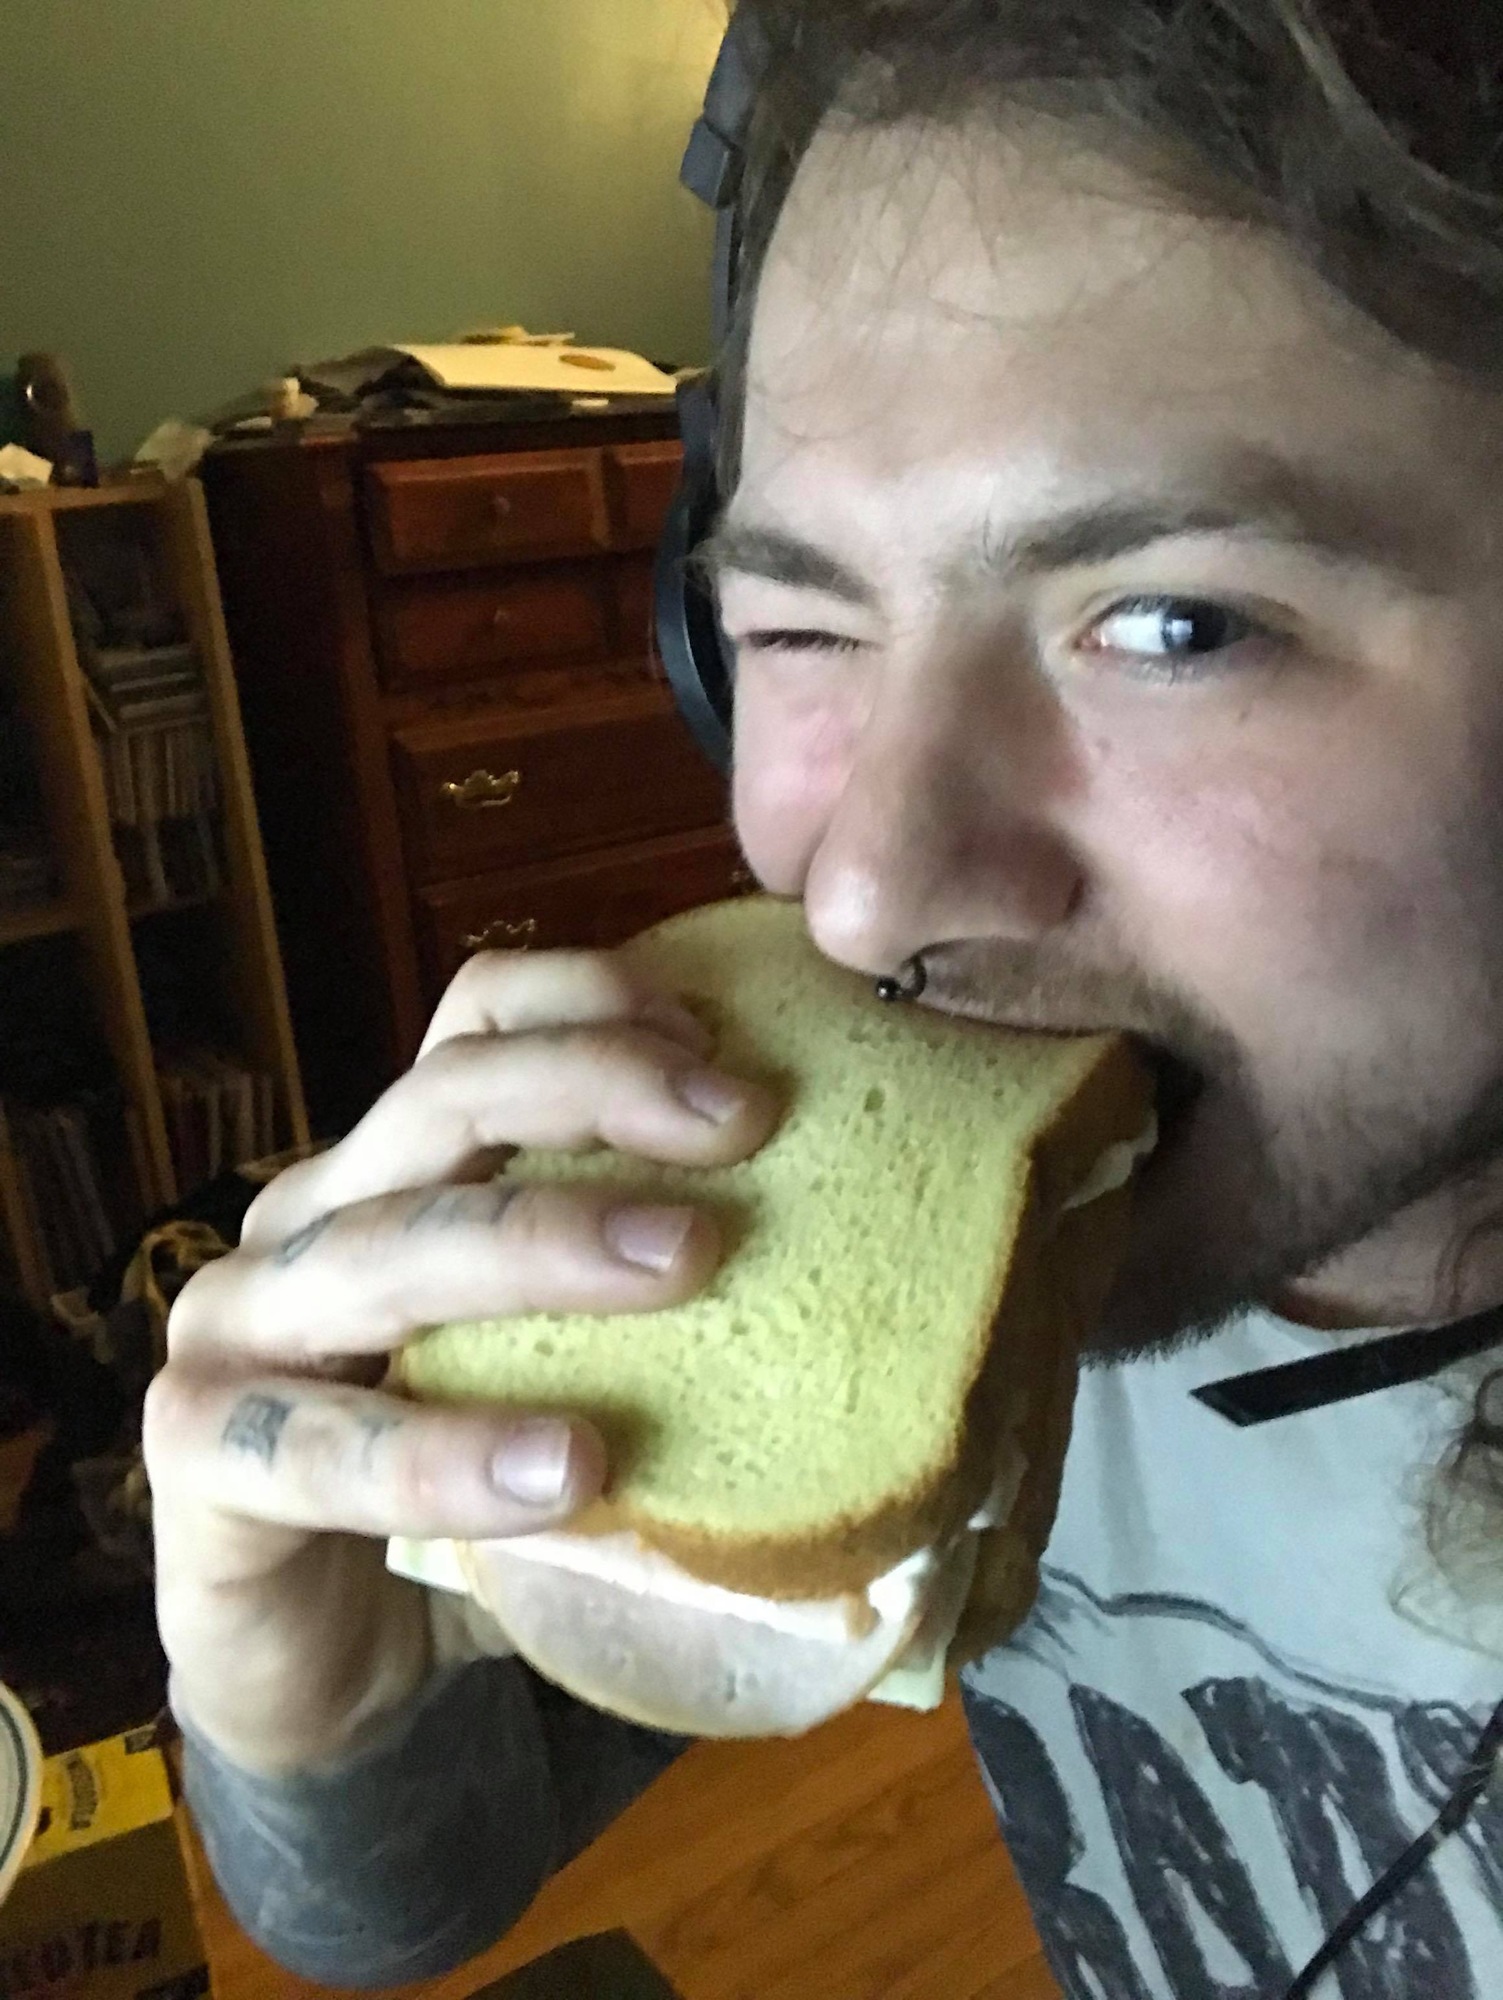 Carl & His Sandwich